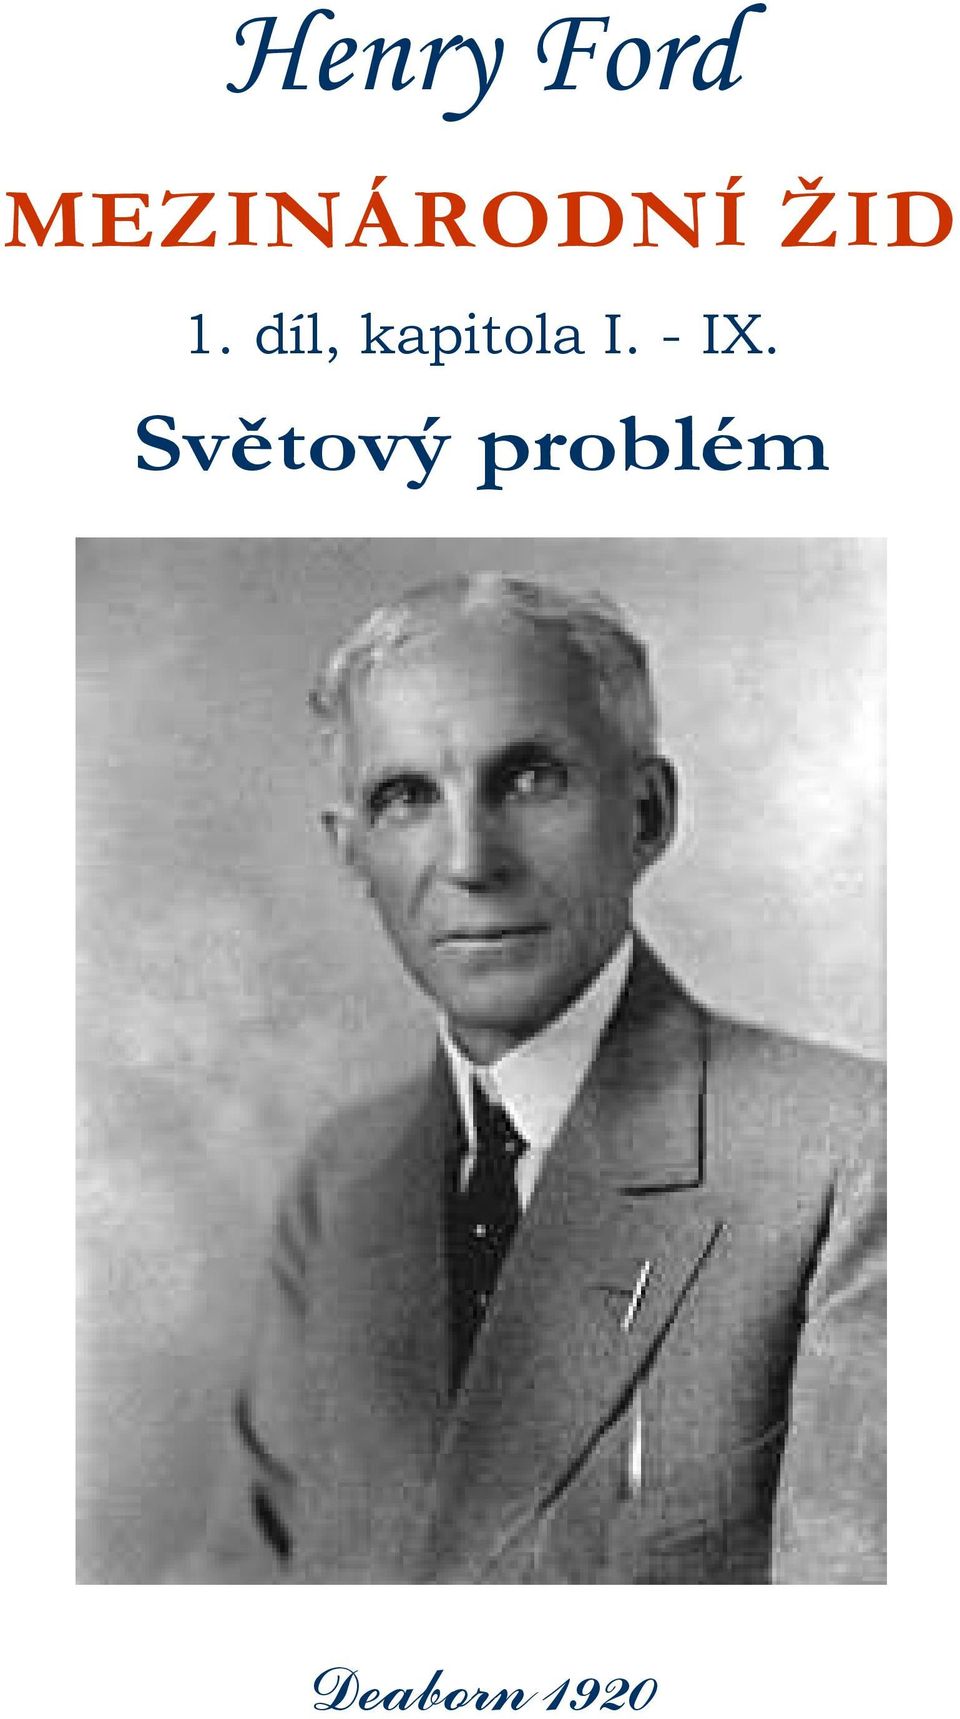 Henry Ford MEZINÁRODNÍ ŽID. Světový problém. Deaborn díl, kapitola I. - IX.  - PDF Stažení zdarma